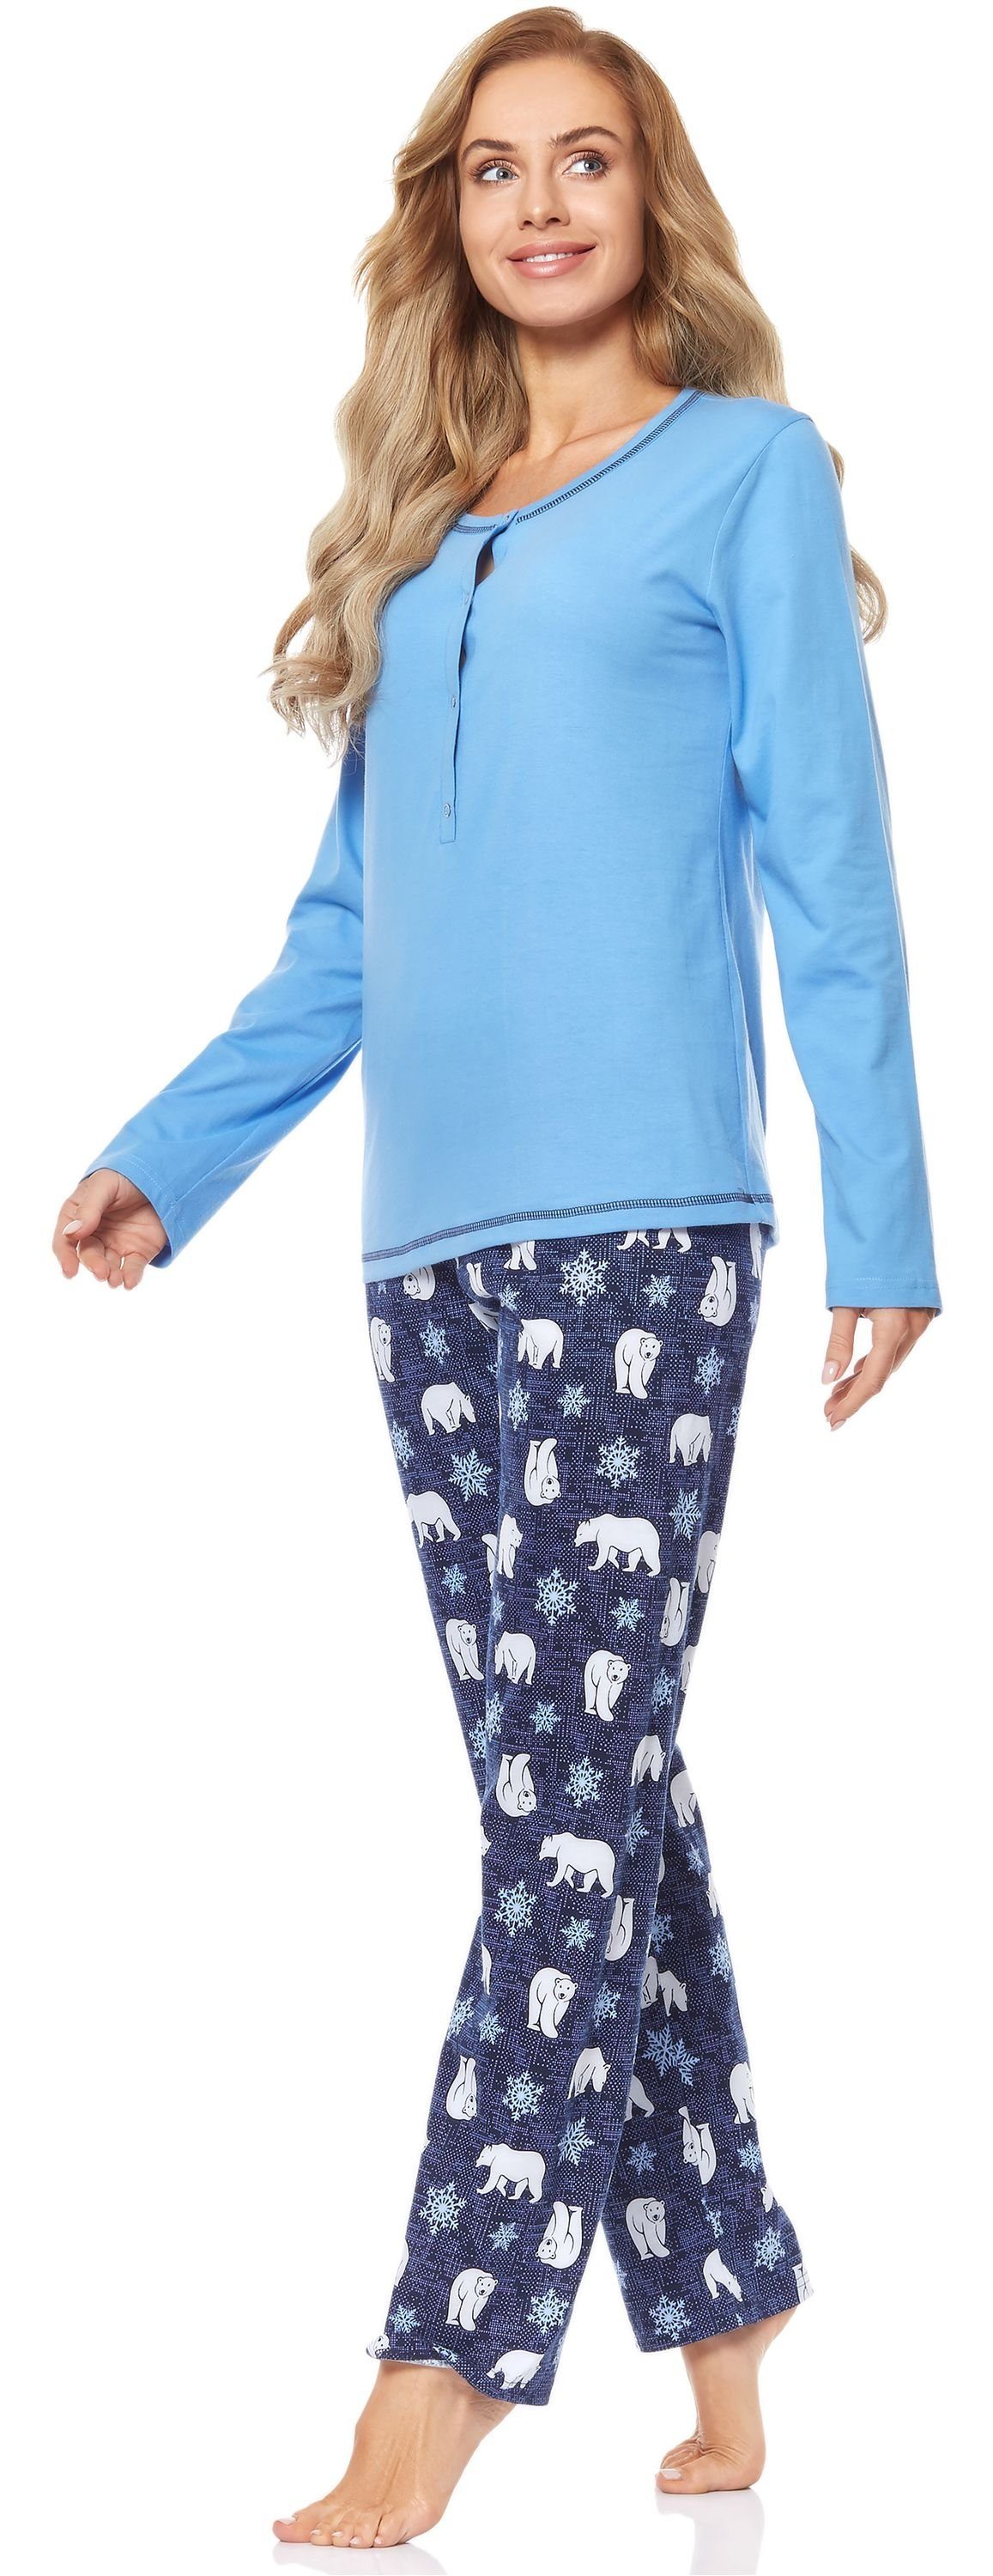 Damen BlauerBär 2112 Schlafanzug Style Merry Schlafanzug